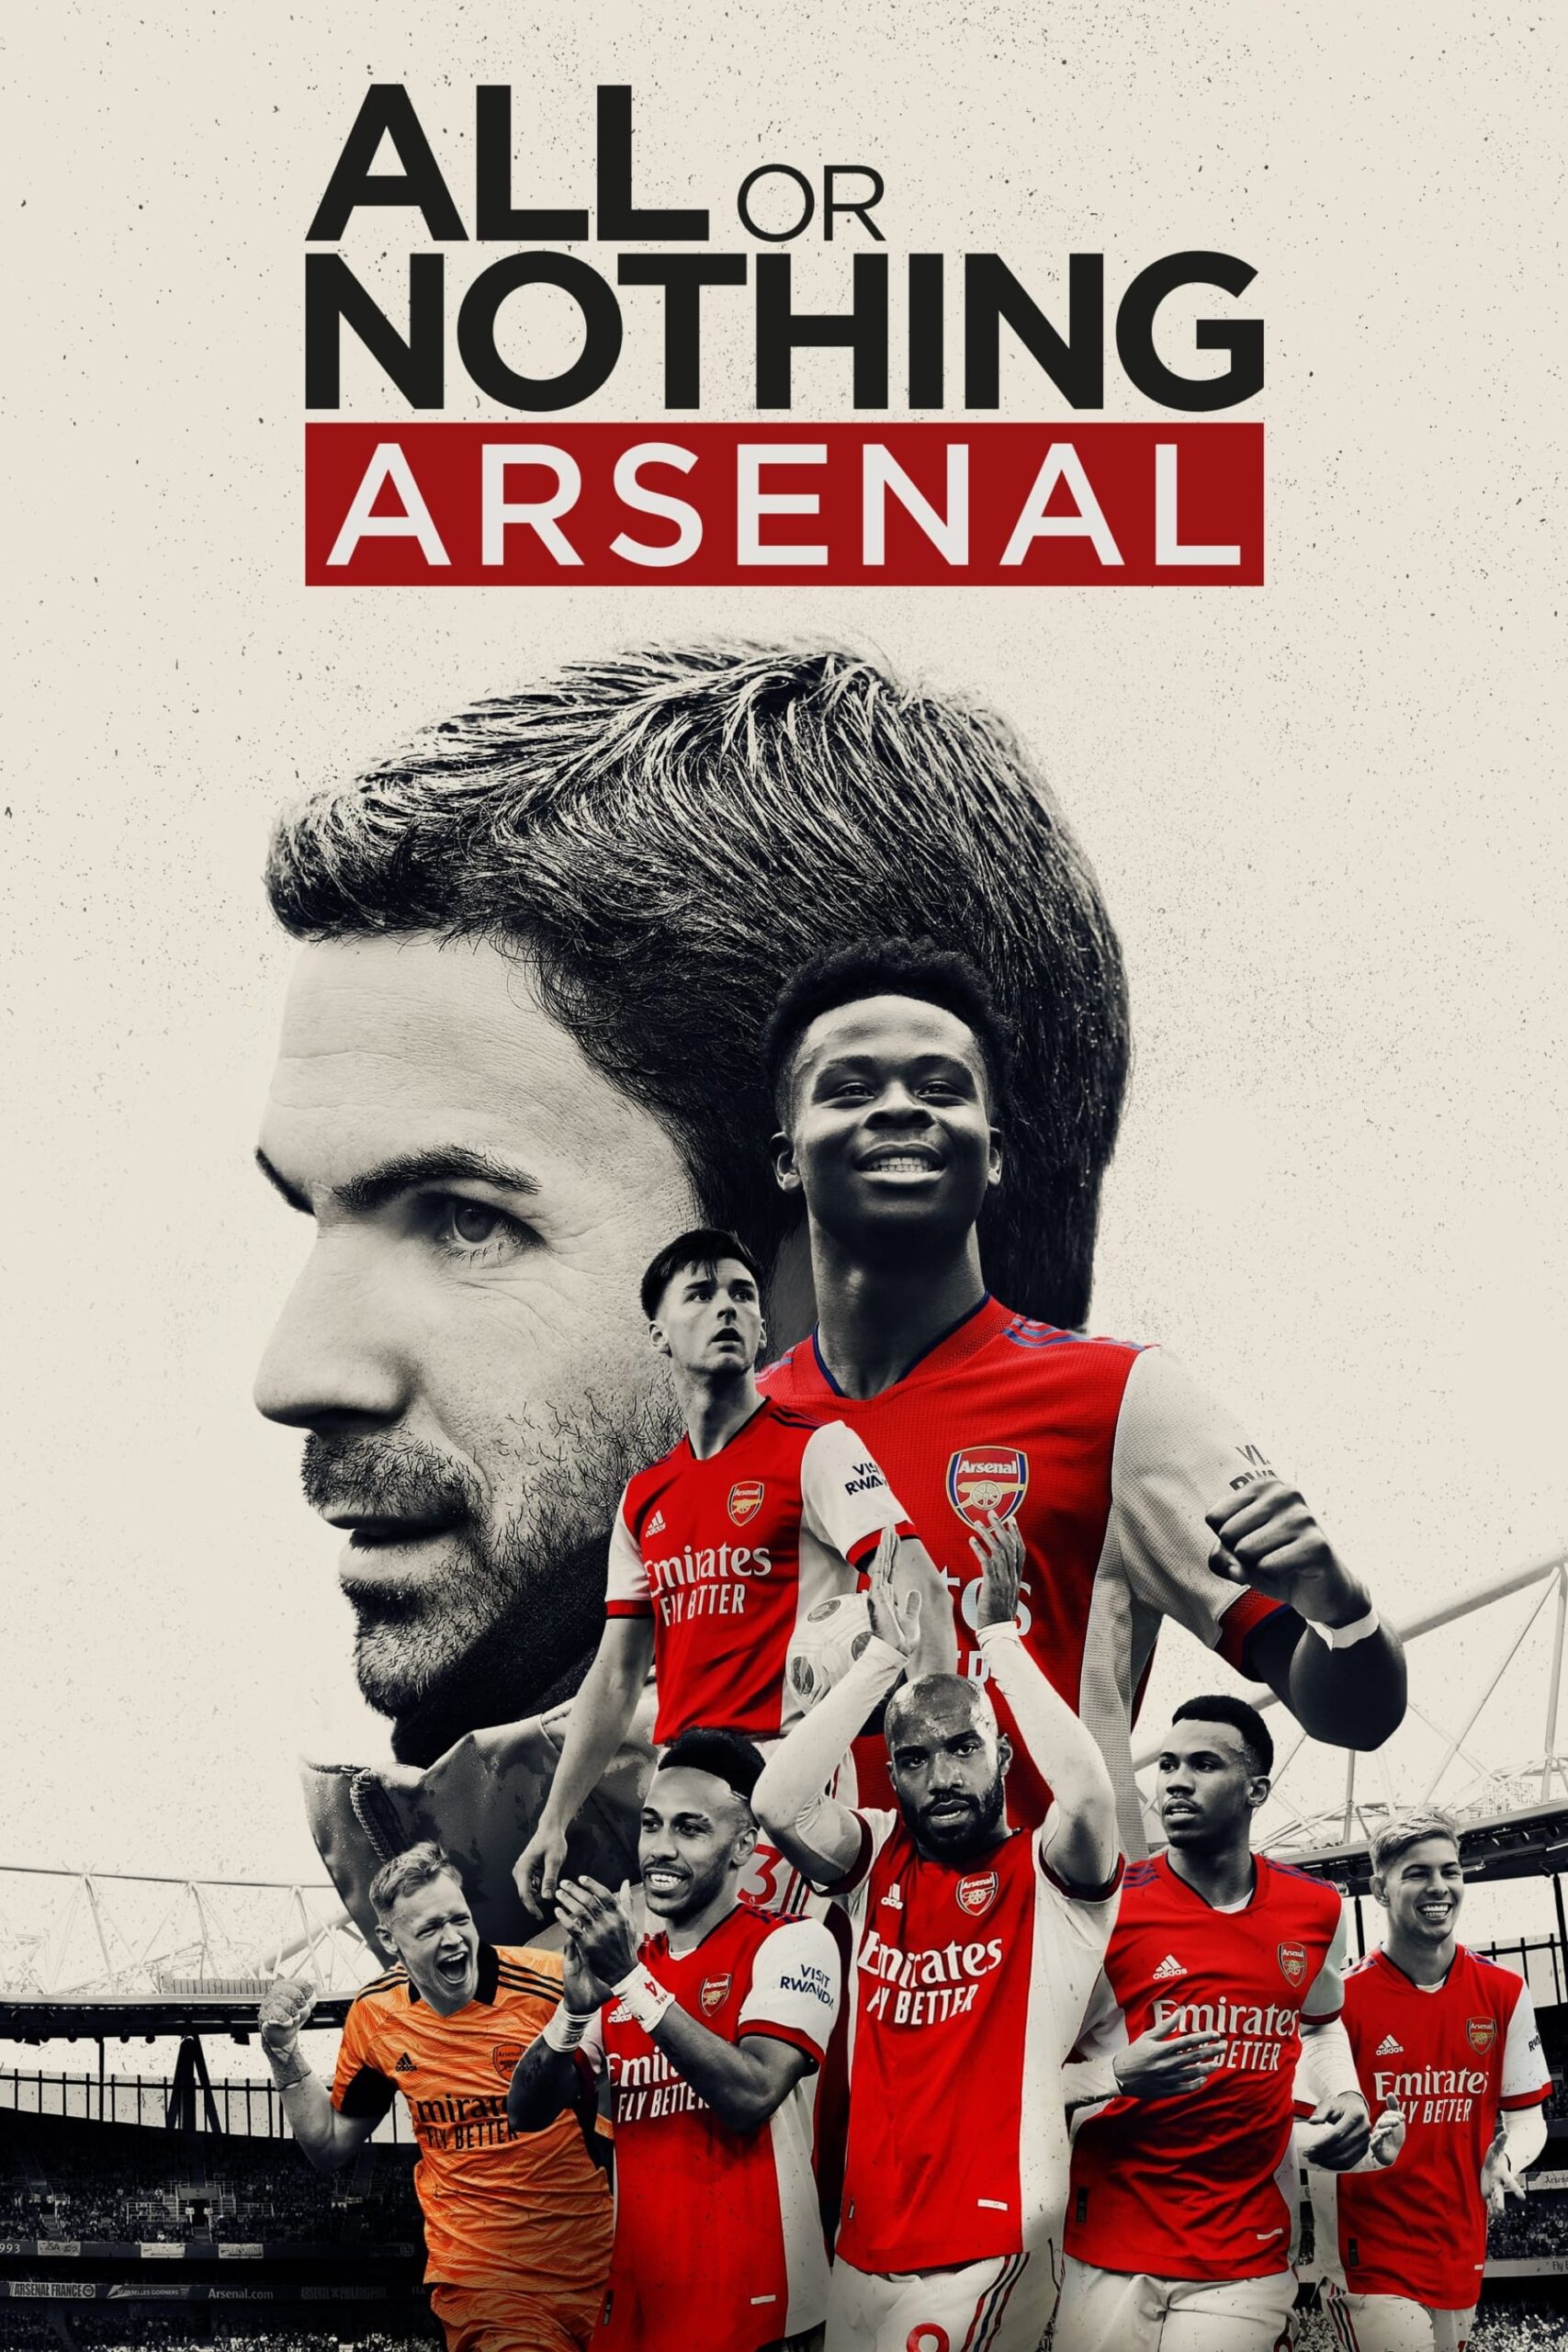 همه یا هیچ: آرسنال (All or Nothing: Arsenal)